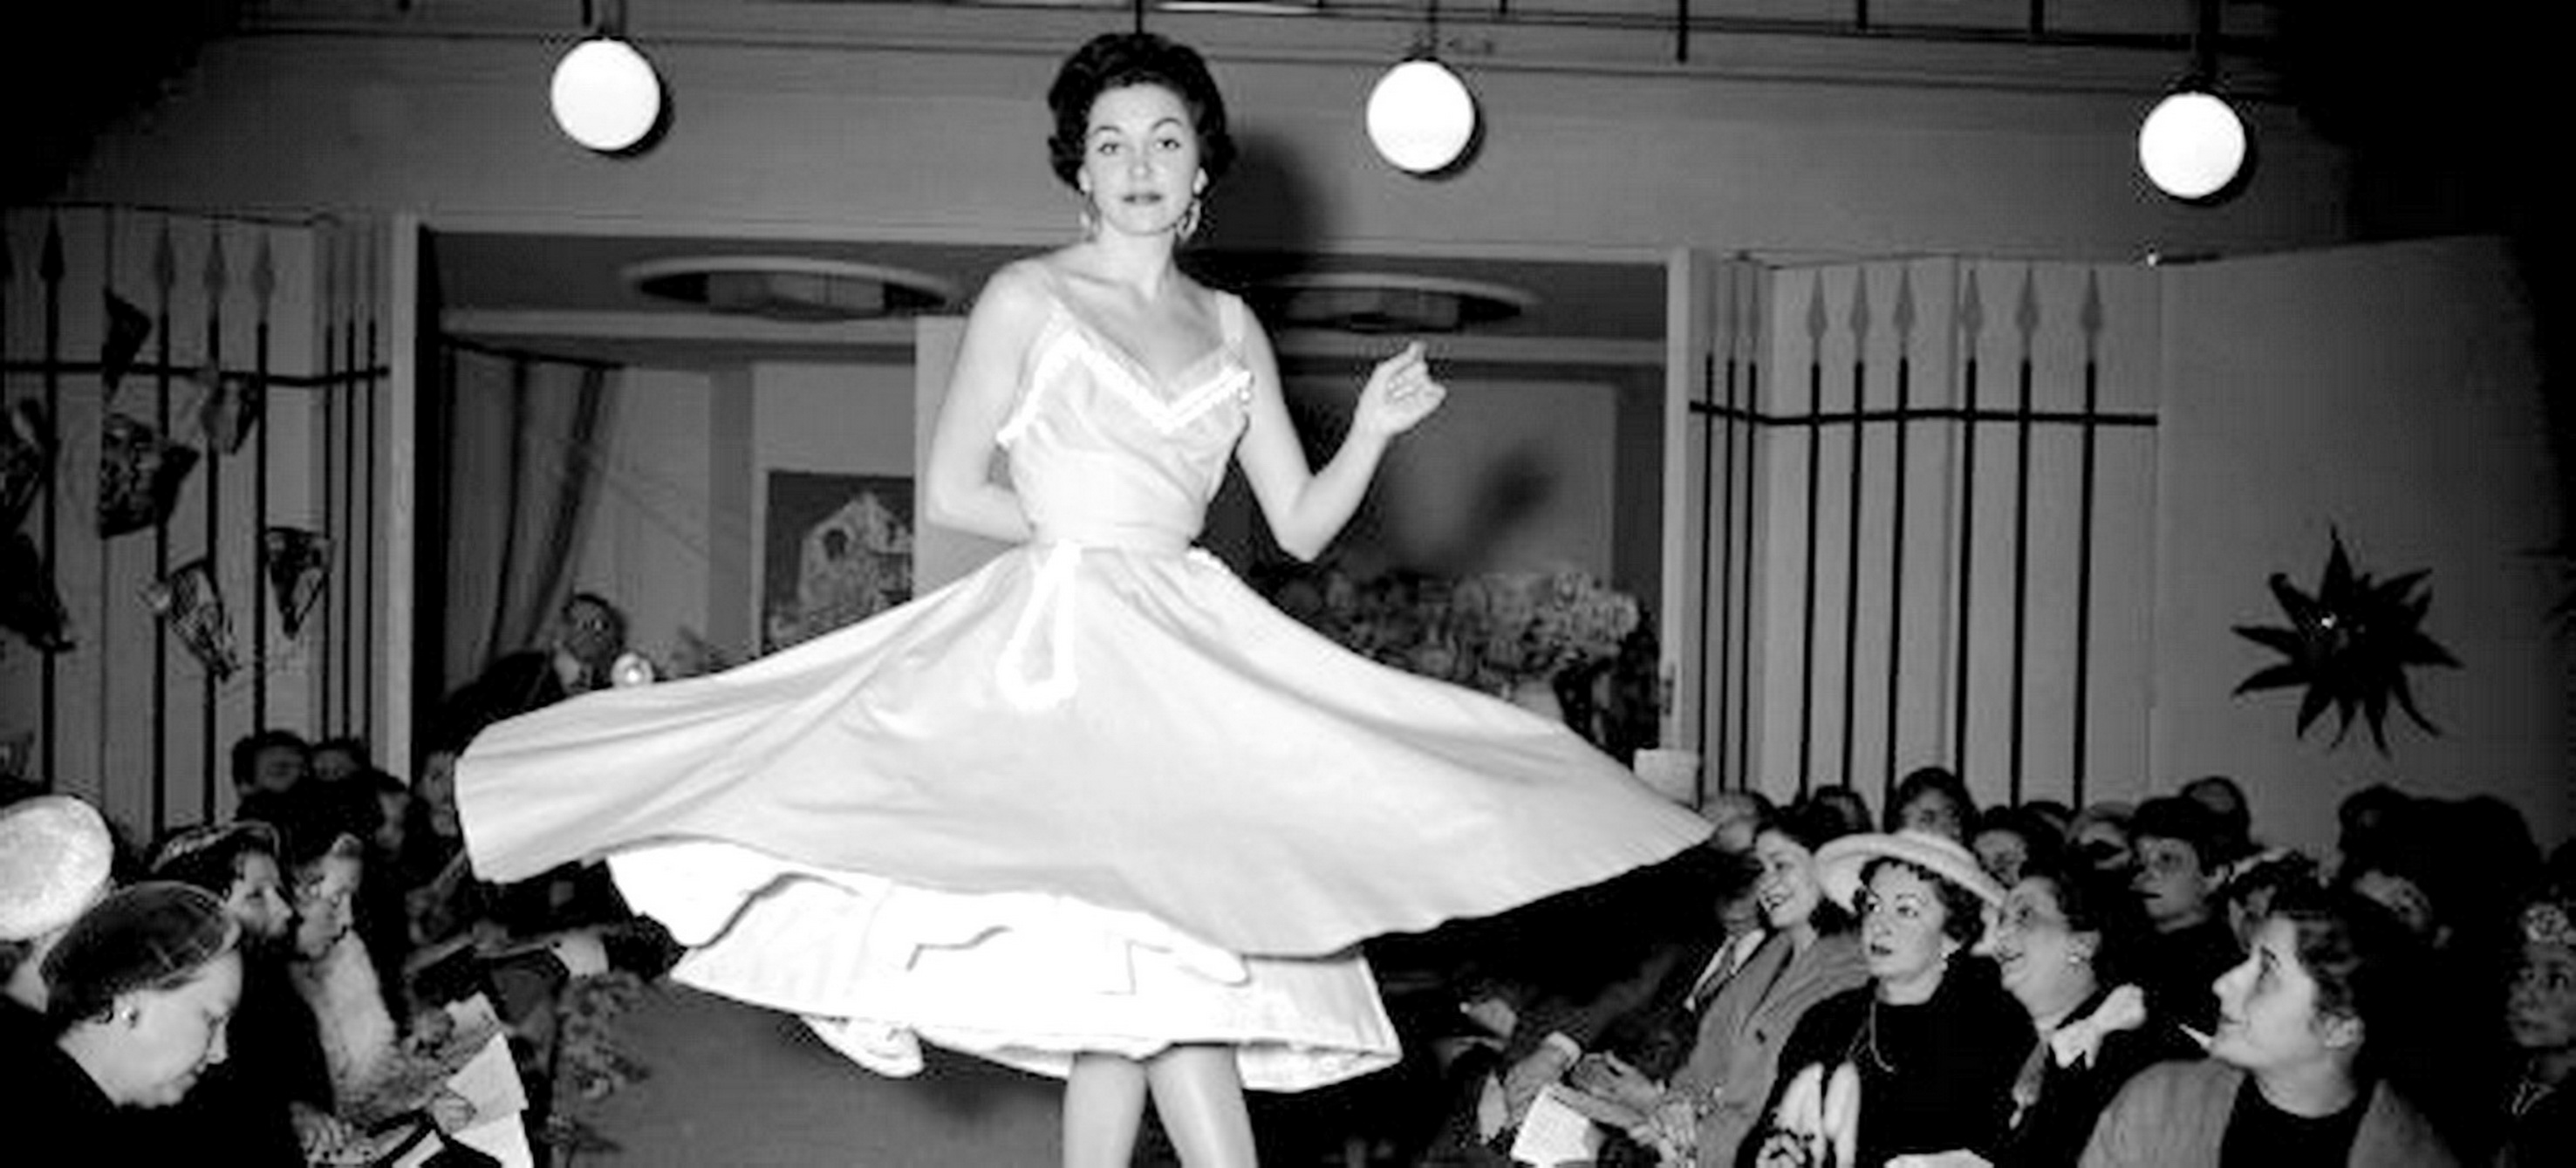 Die Petticoat-Mode - Ausdruck eines neuen Lebensgefühls in den fünfziger Jahren...